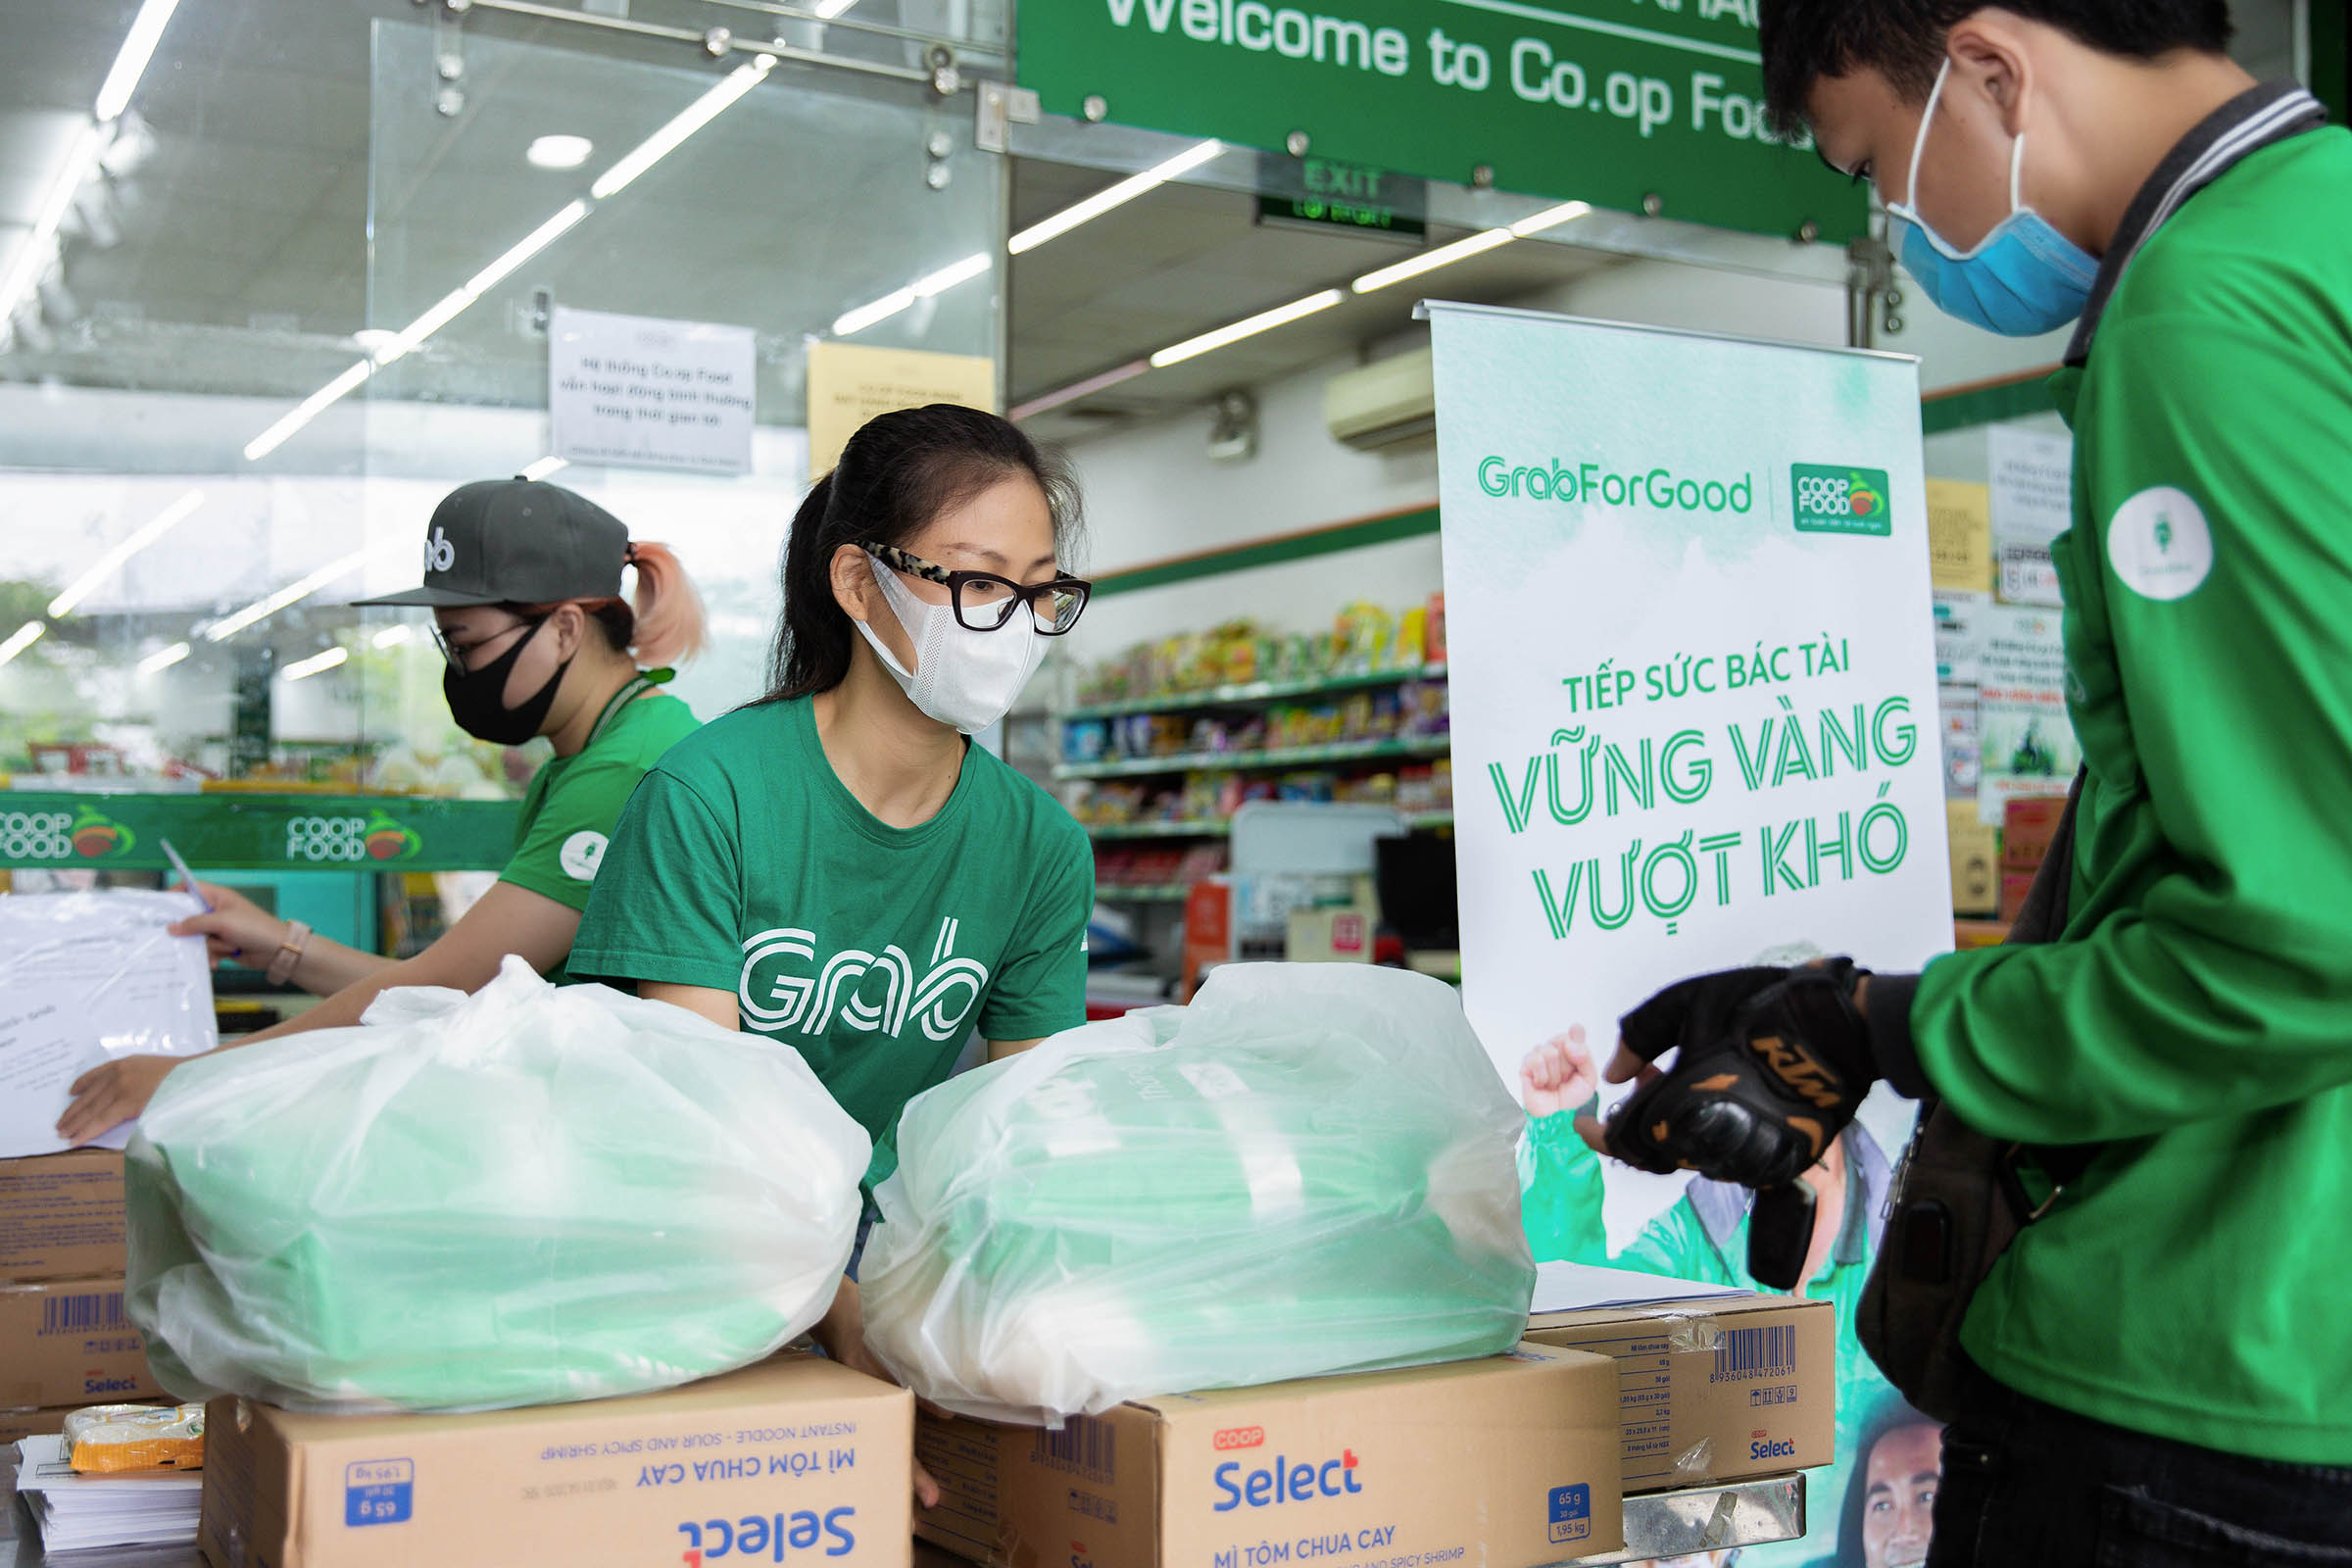 Bà Nguyễn Thái Hải Vân tặng gạo và mì cho đối tác tài xế 2 Grab trao tặng gần 80 tấn gạo và 8.000 thùng mì gói, hỗ trợ đối tác tài xế vượt qua khó khăn trong dịch COVID 19